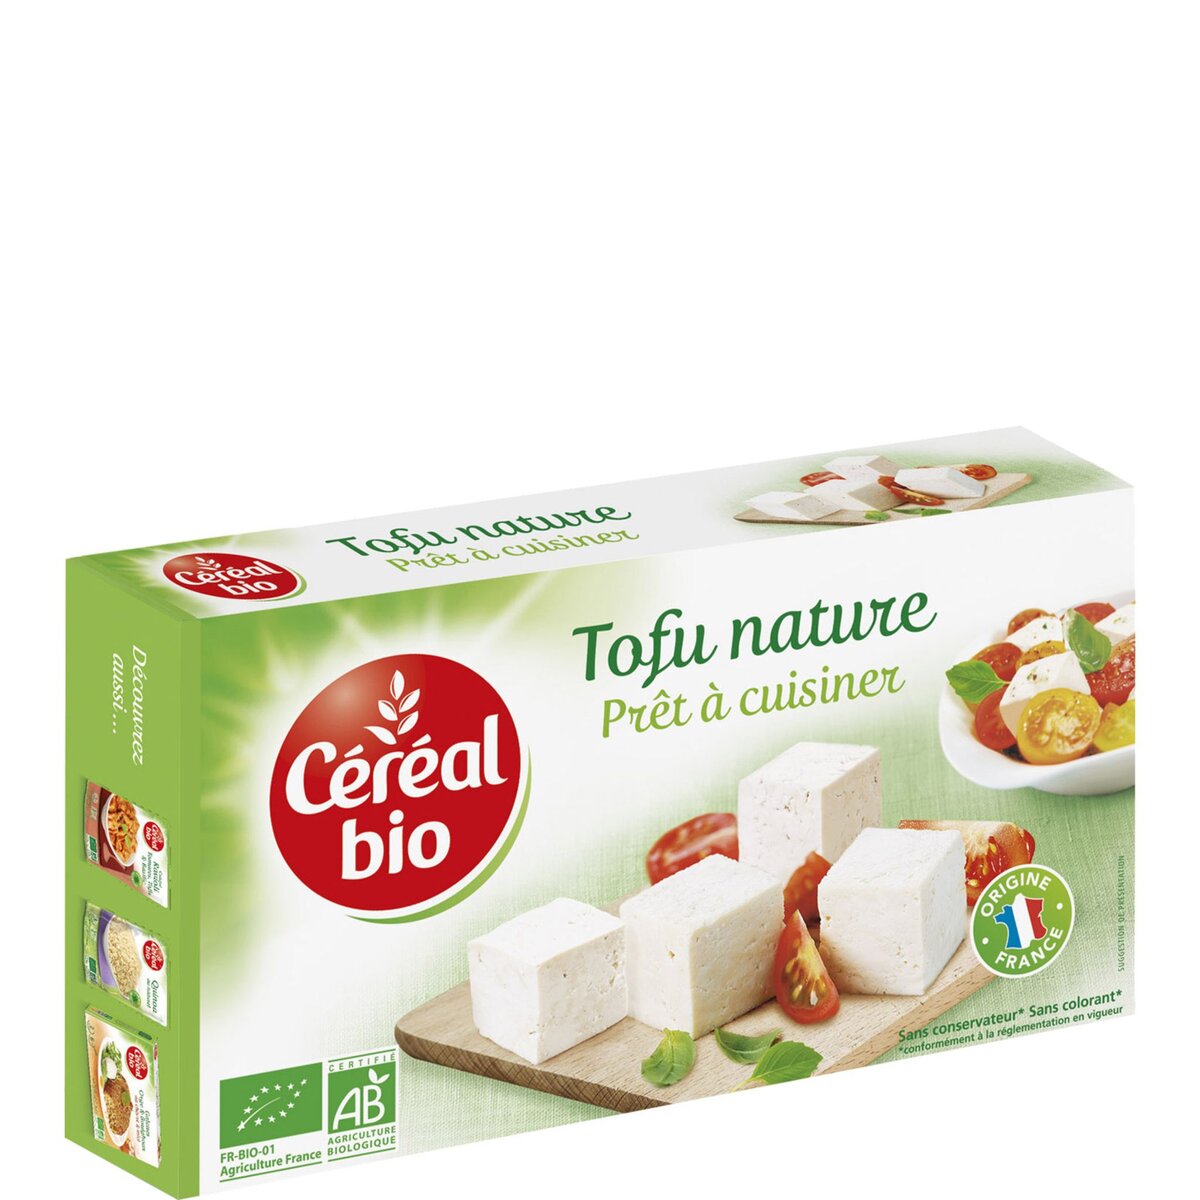 Le Tofu BIO nature - mon-marché.fr